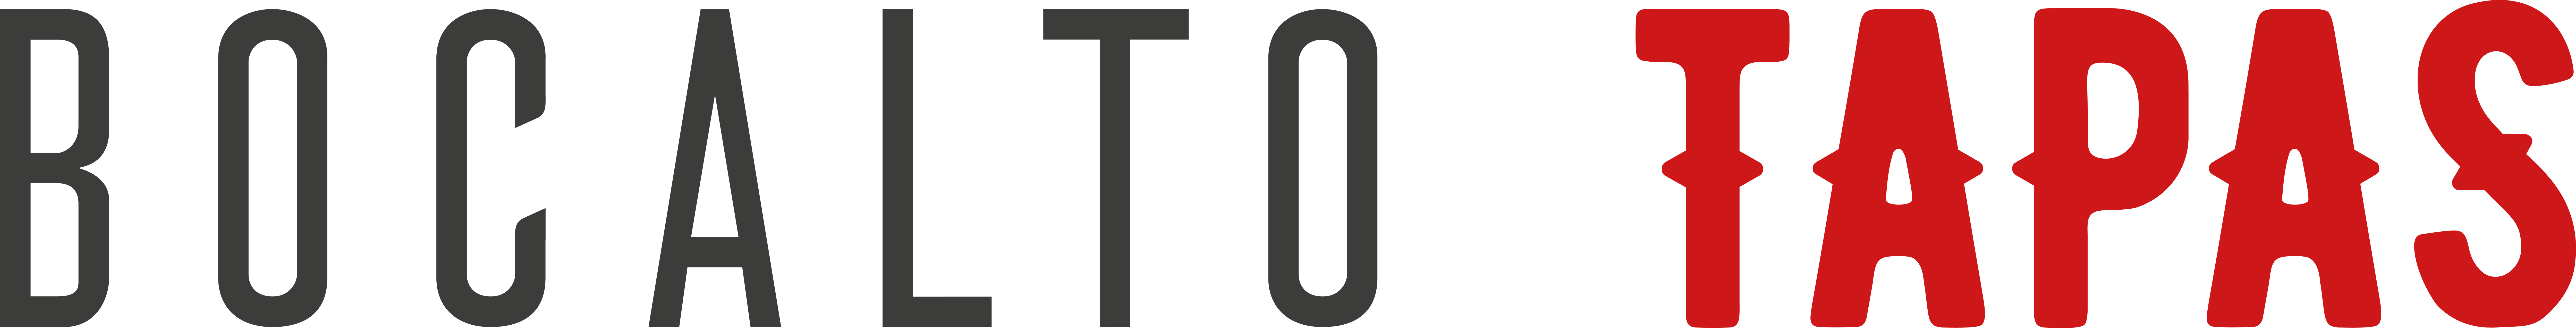 Bocalto Tapas. Logo de Indesingers